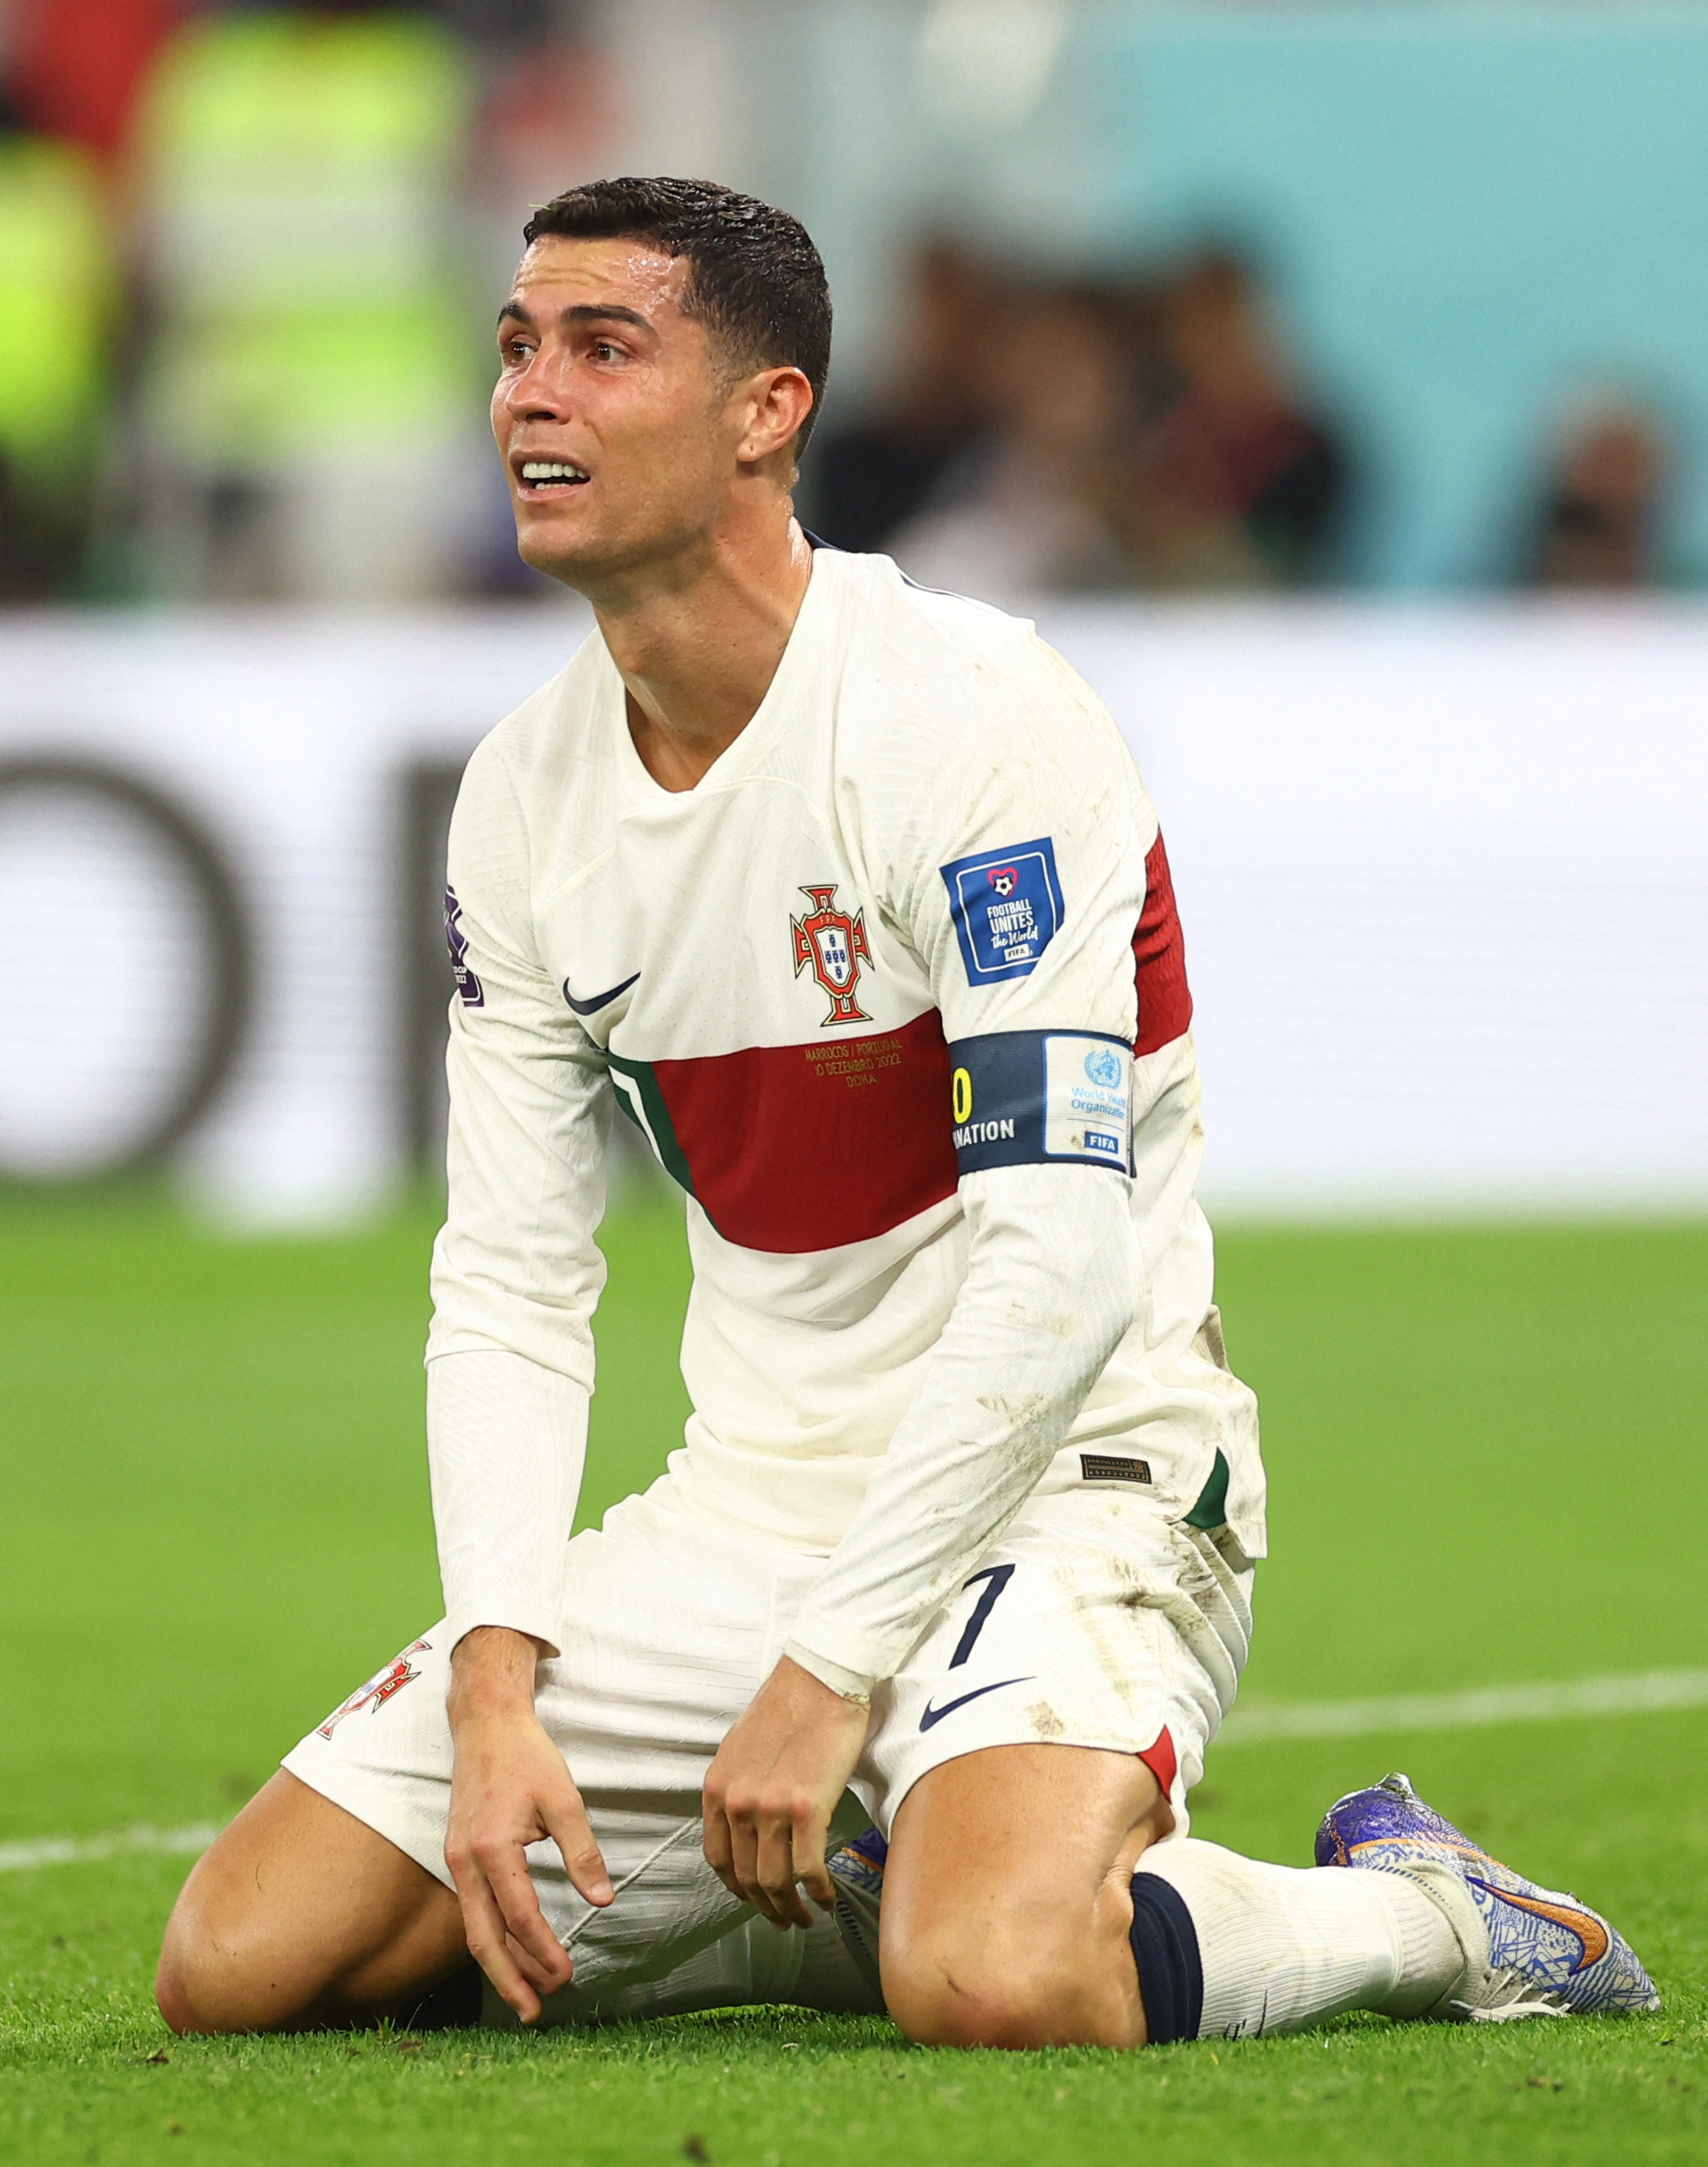 Cristiano Ronaldo và Saudi Arabia đã ký kết bản hợp đồng có giá trị lớn trong thế giới bóng đá. Hãy xem ảnh để hiểu rõ hơn về những tiềm năng mà CR7 mang đến cho đội bóng này và cũng để cảm nhận sự phấn khích của người hâm mộ.